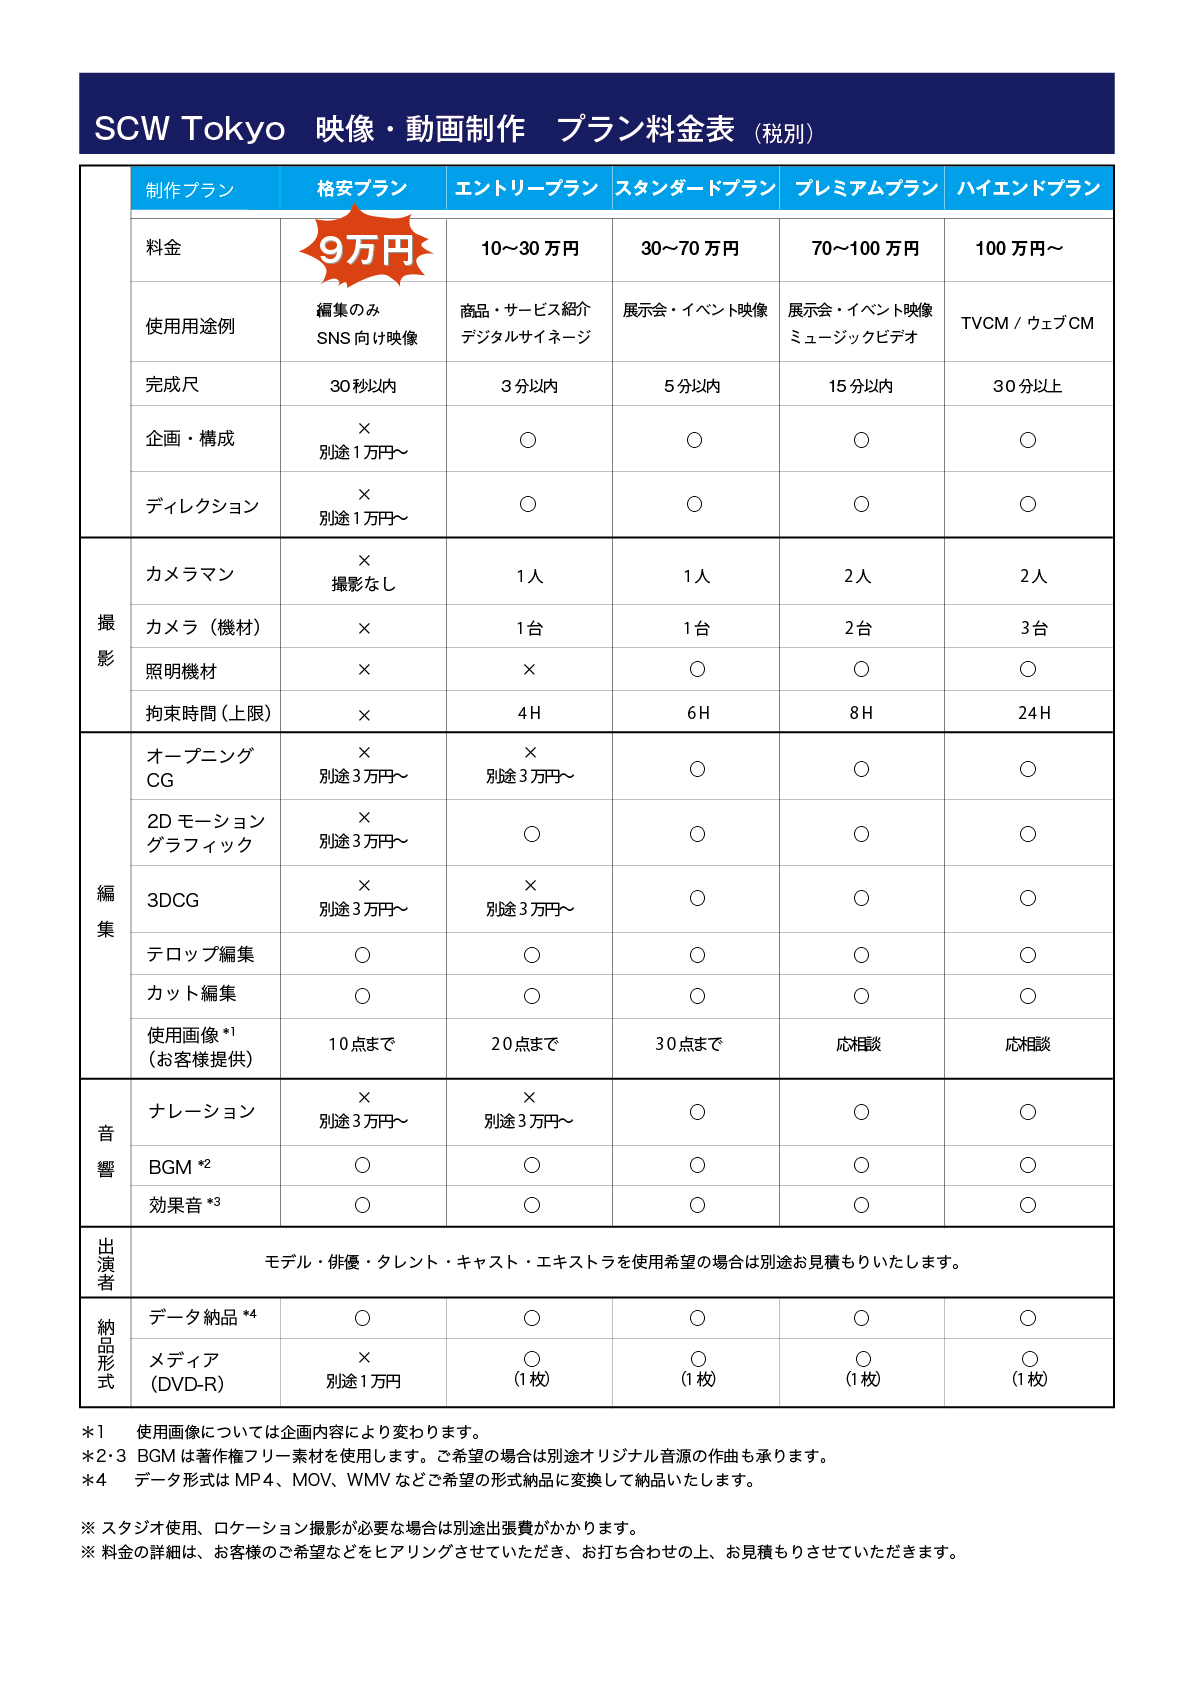 SCW Tokyoの動画・映像制作料金表。格安プランは9万円（税別）からご利用いただけます。